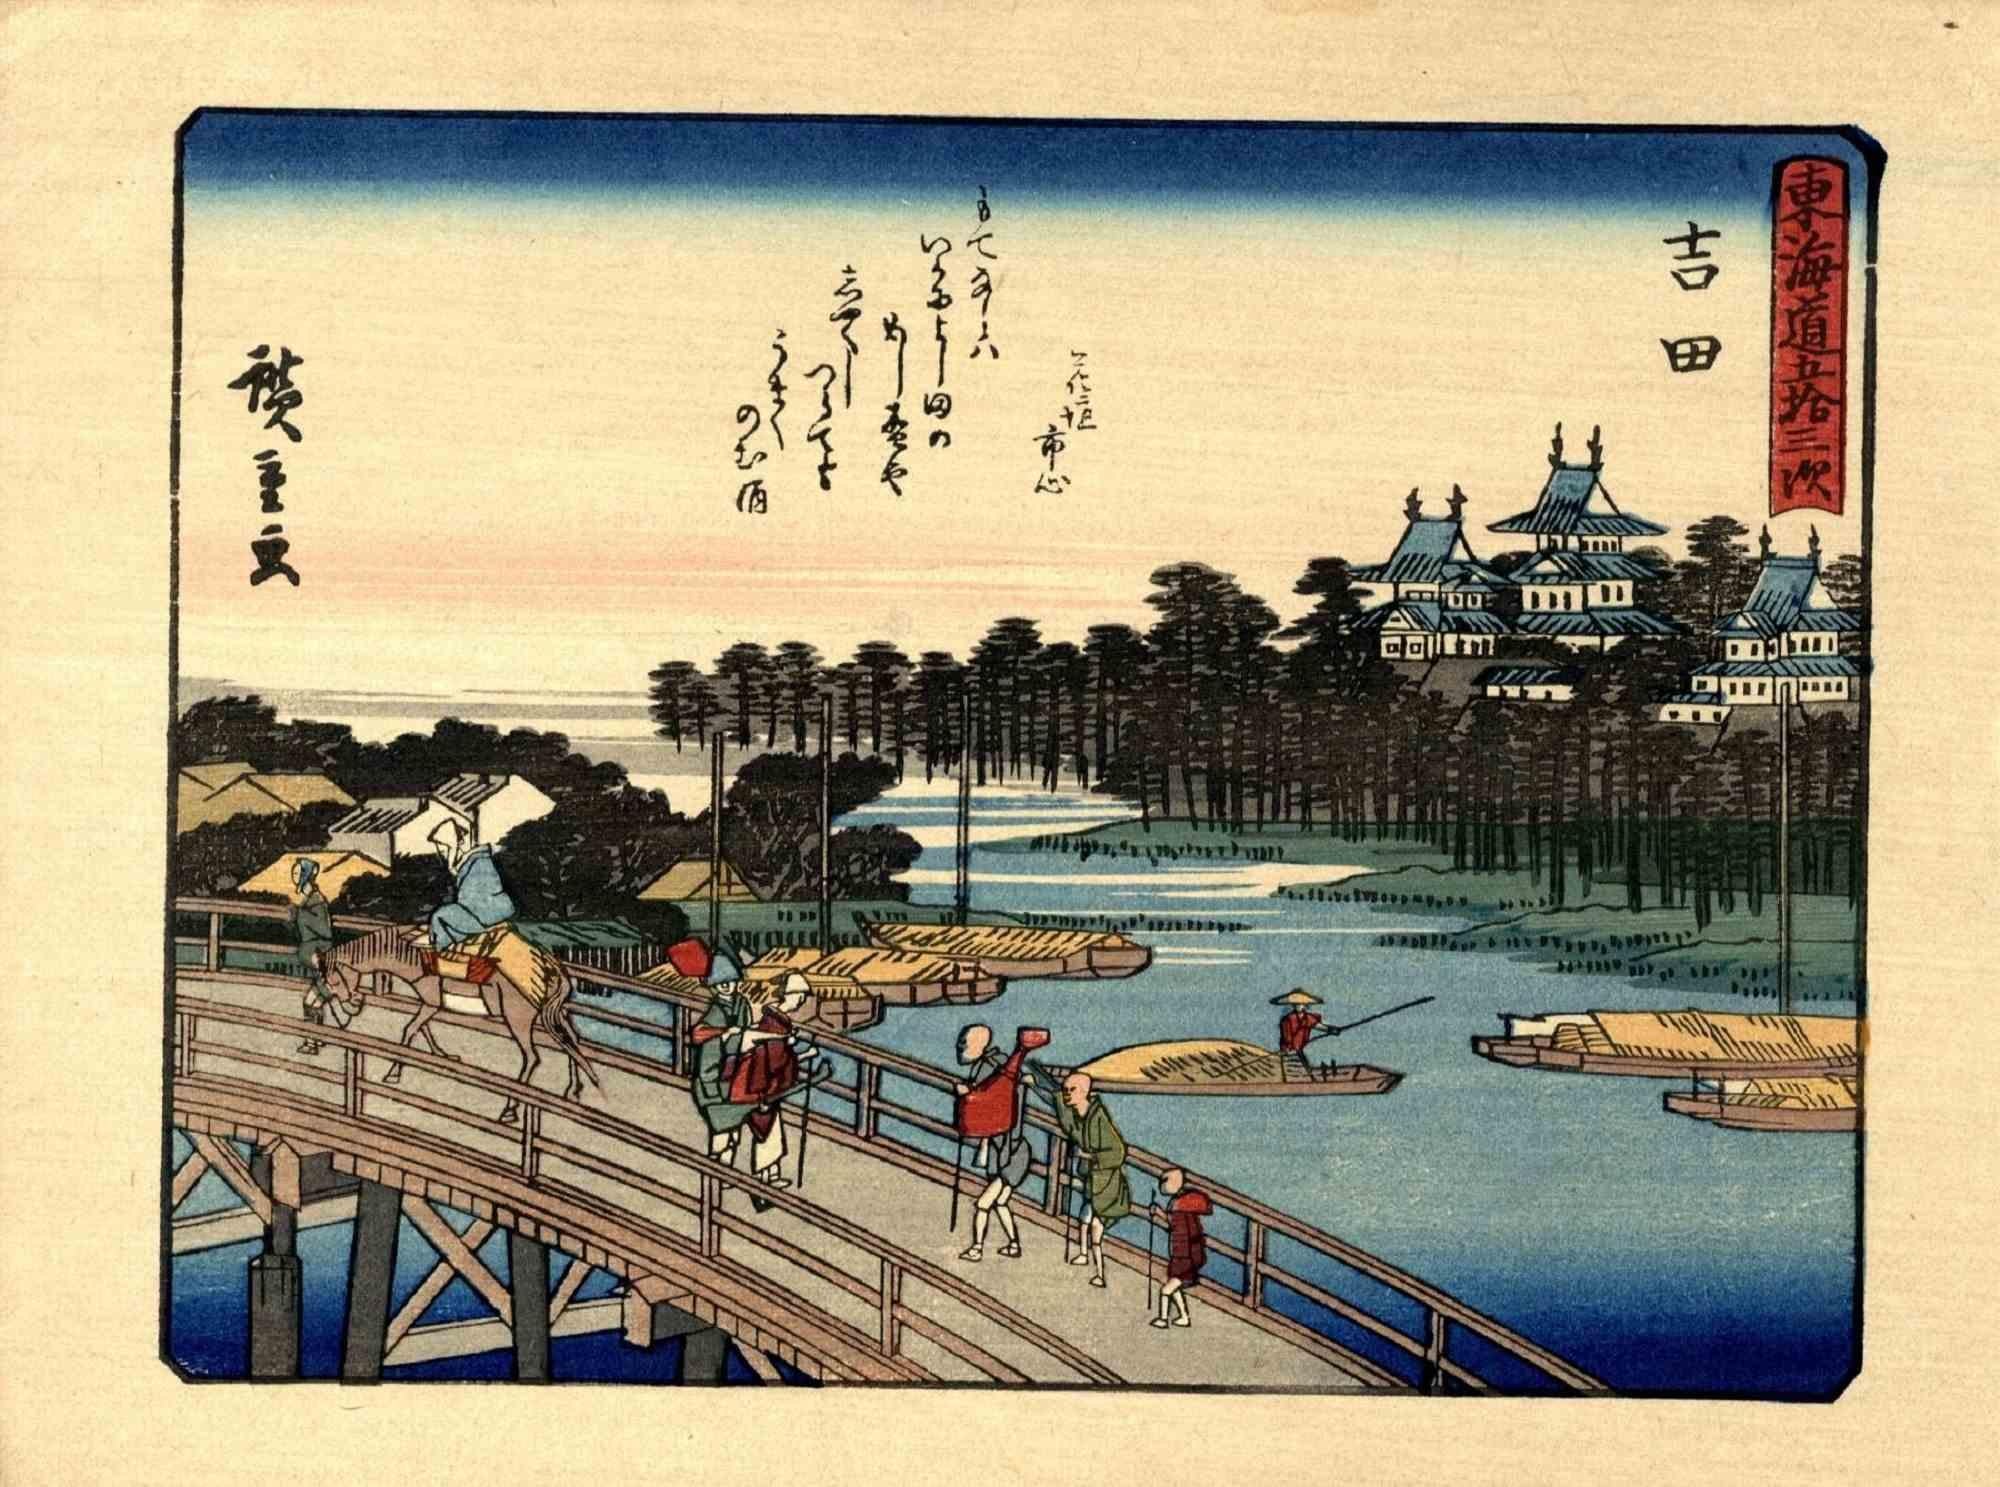 Der verkleinerte Nachdruck der Serie "Tokaido gojusan tsugi" ist ein originales modernes Kunstwerk, das nach Utagawa Hiroshige (1797 - 12. Oktober 1858) im Jahr 1925 realisiert wurde.

Original-Holzschnittdruck Chuban yokoe.

Unterschrieben: